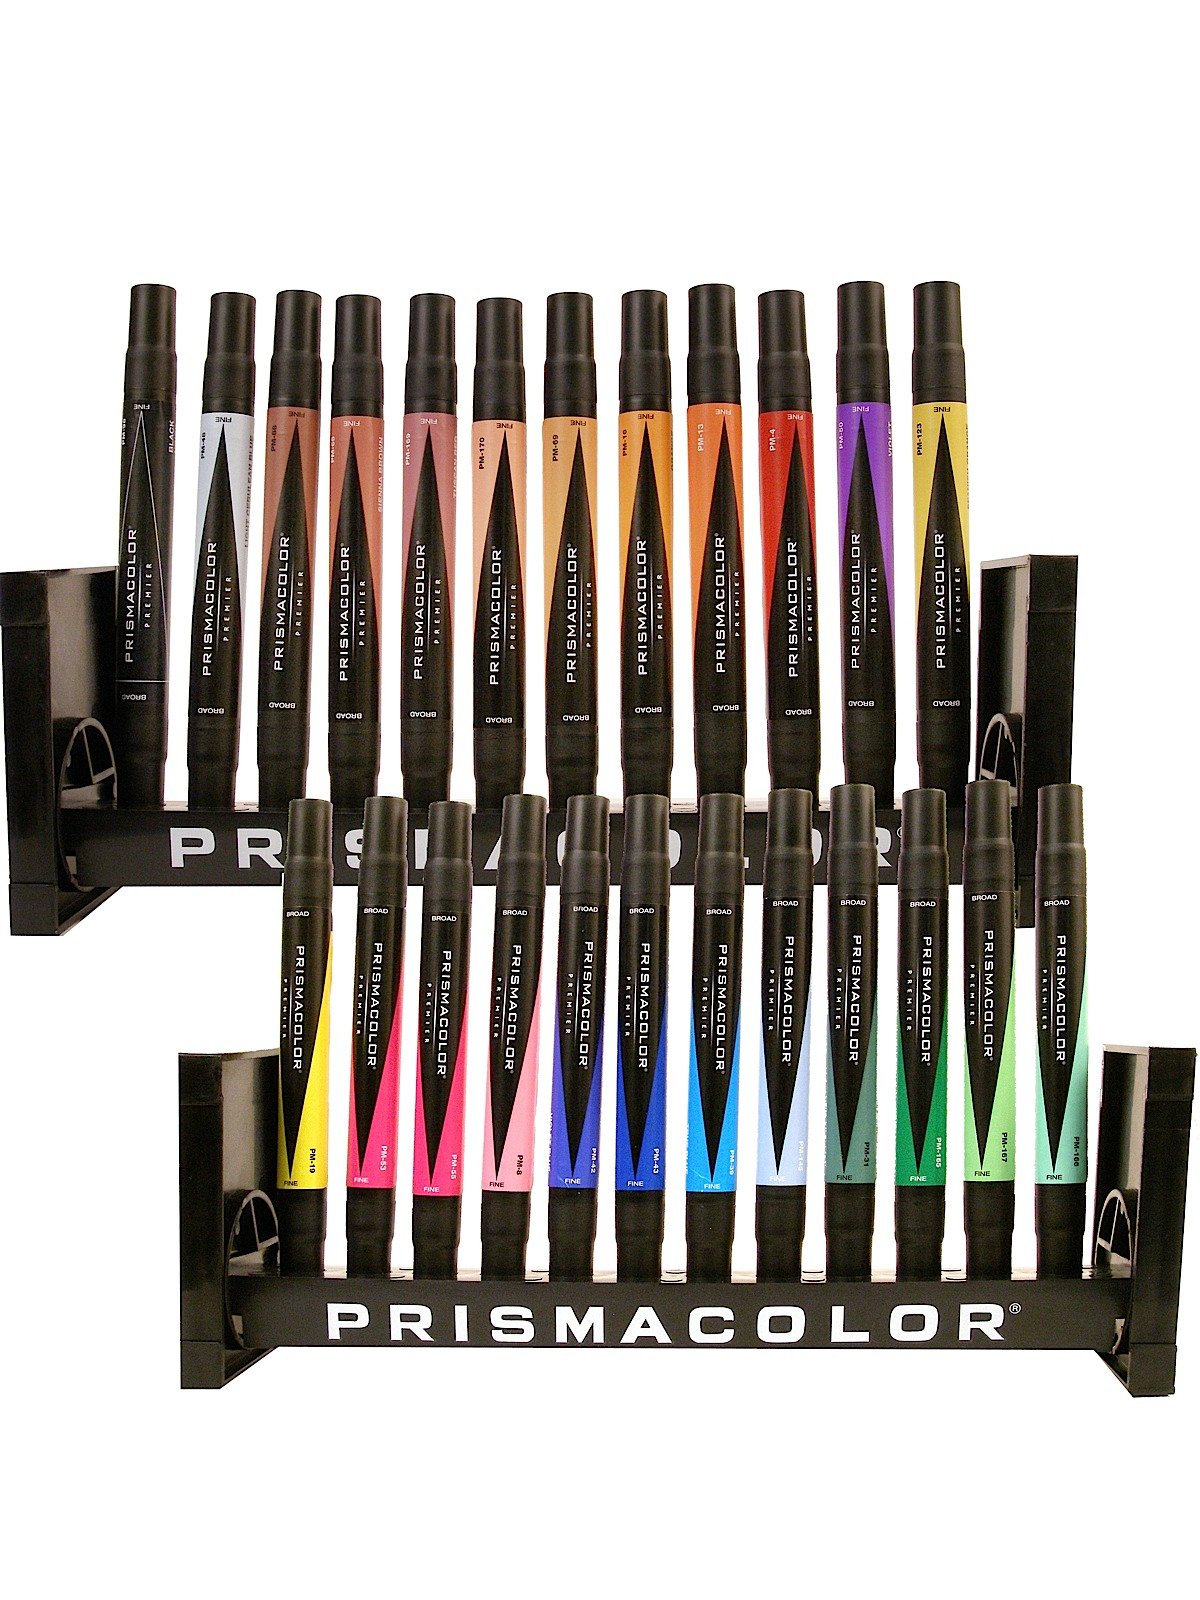 Prismacolor Premier Art Marker Black